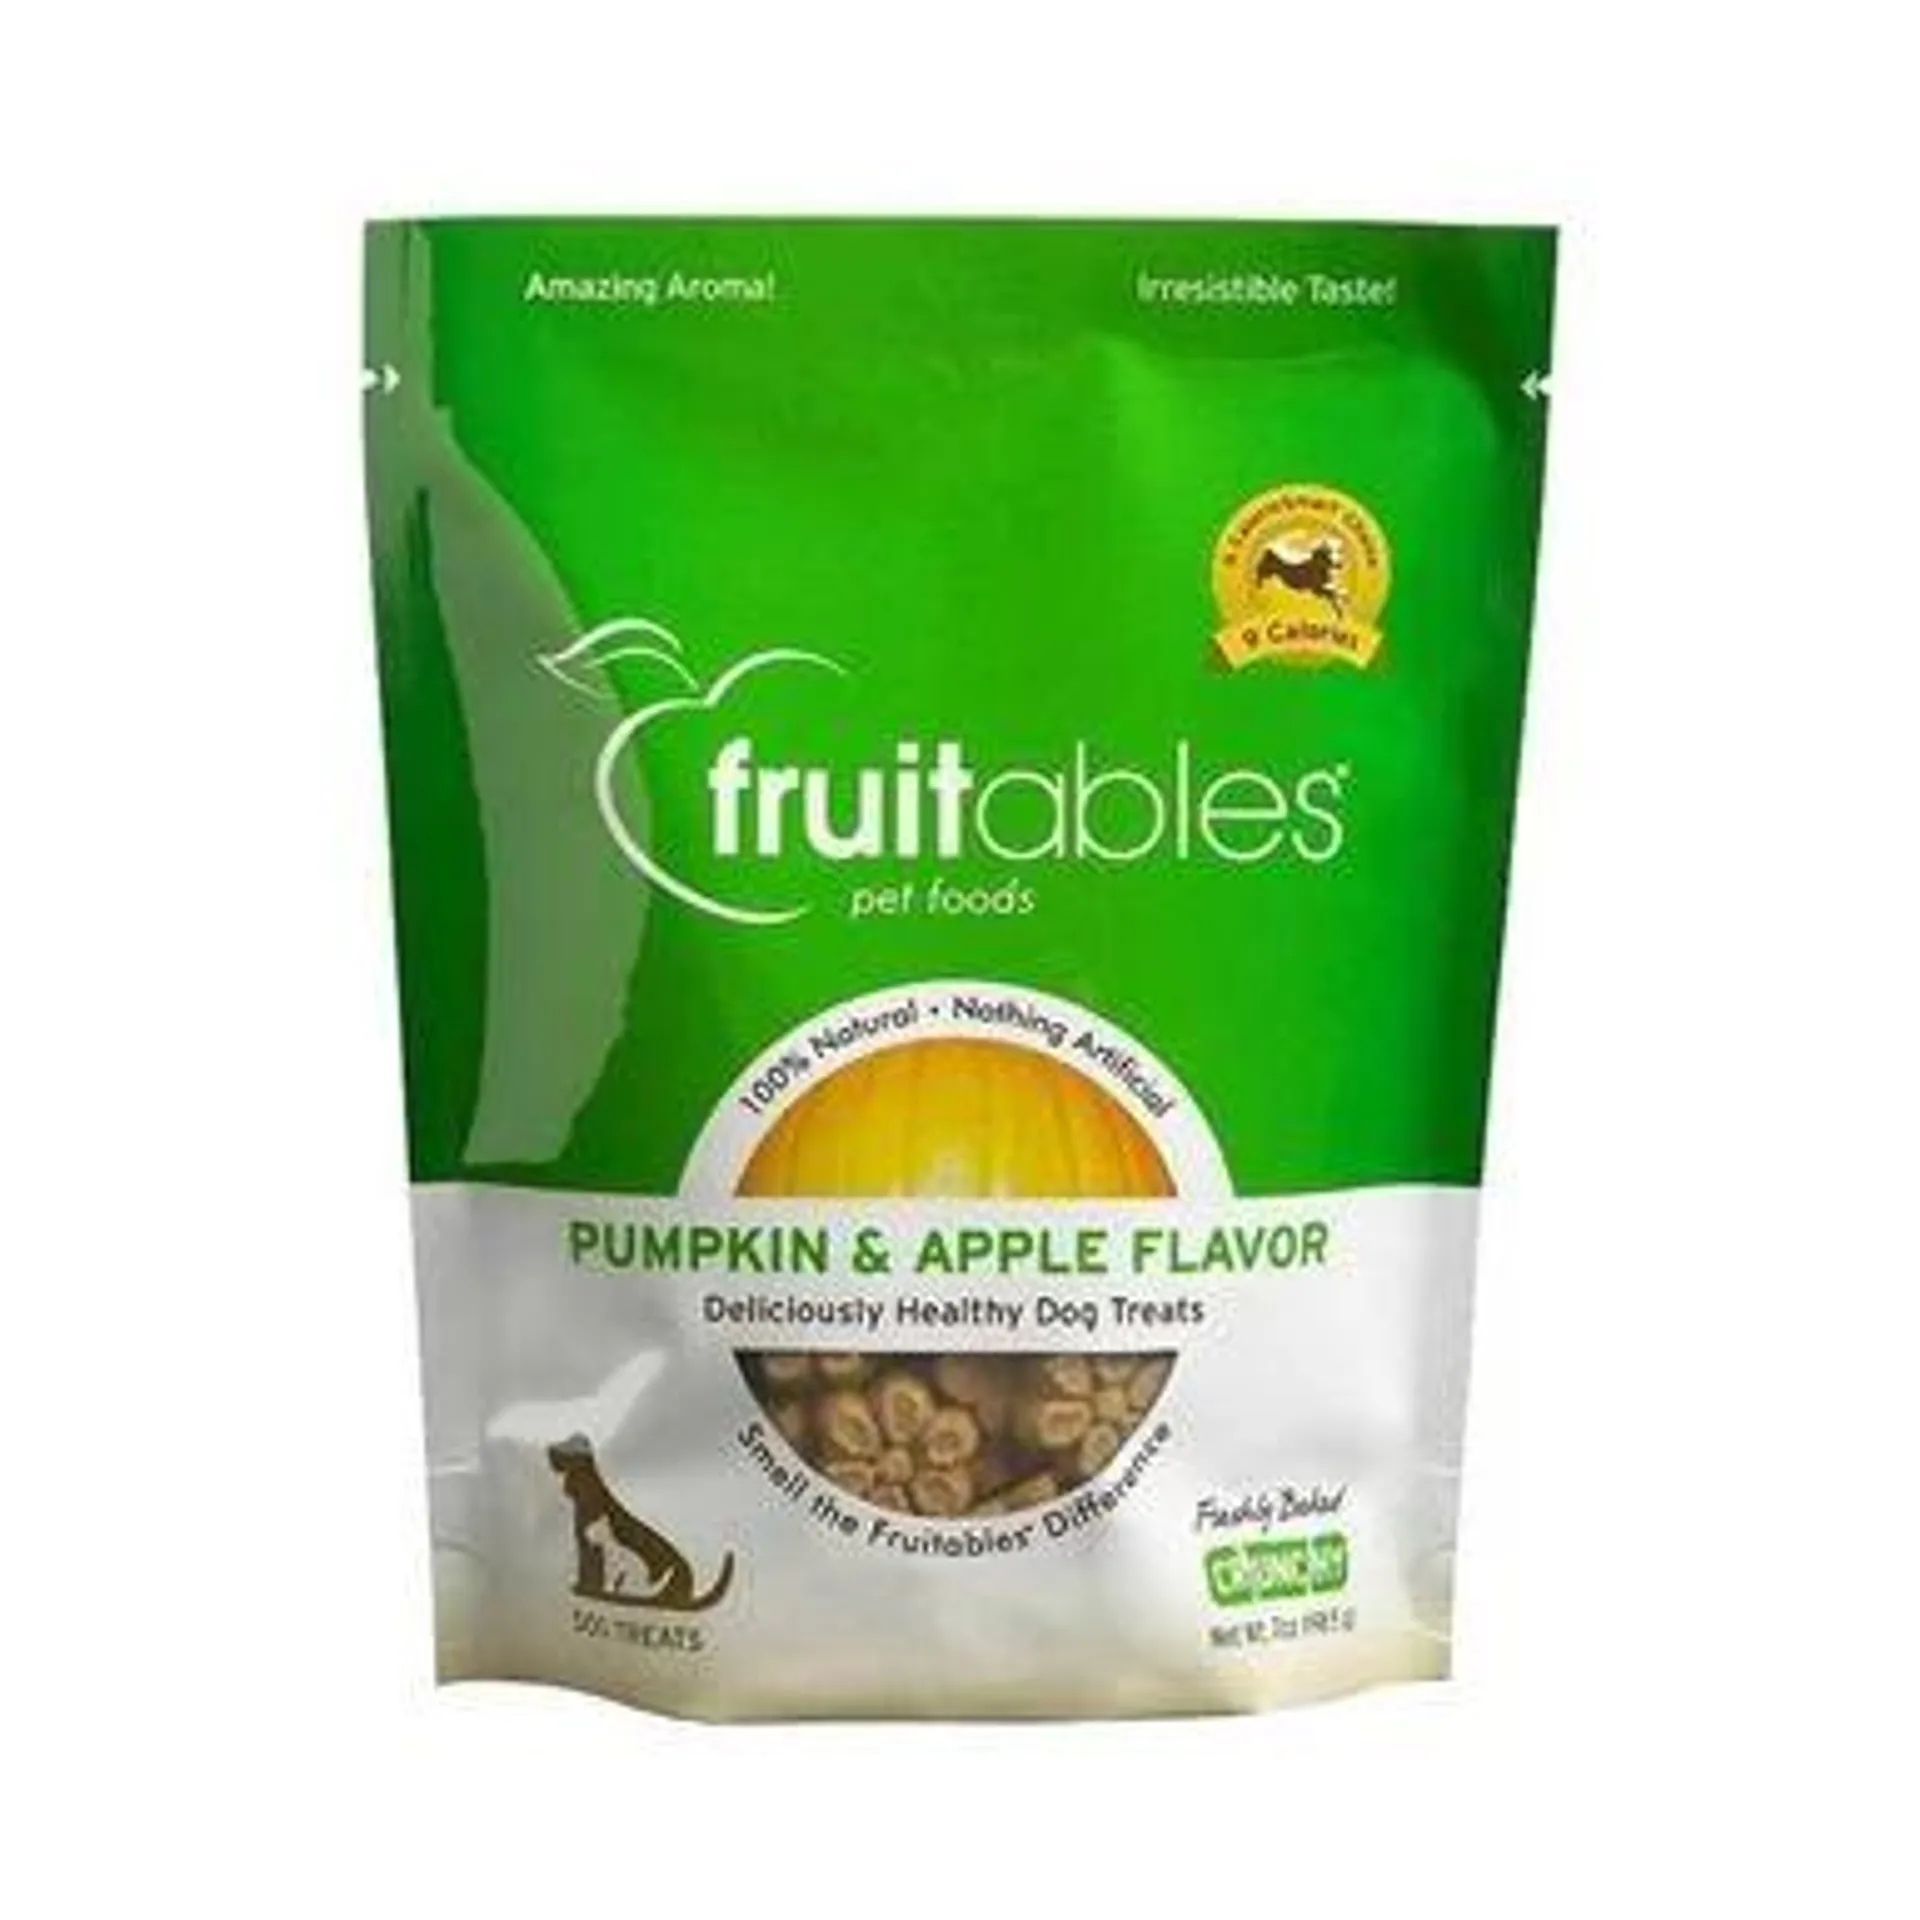 Fruitables Pumpkin & Apple Flavor Crunchy Dog Treats, 7 Ounces